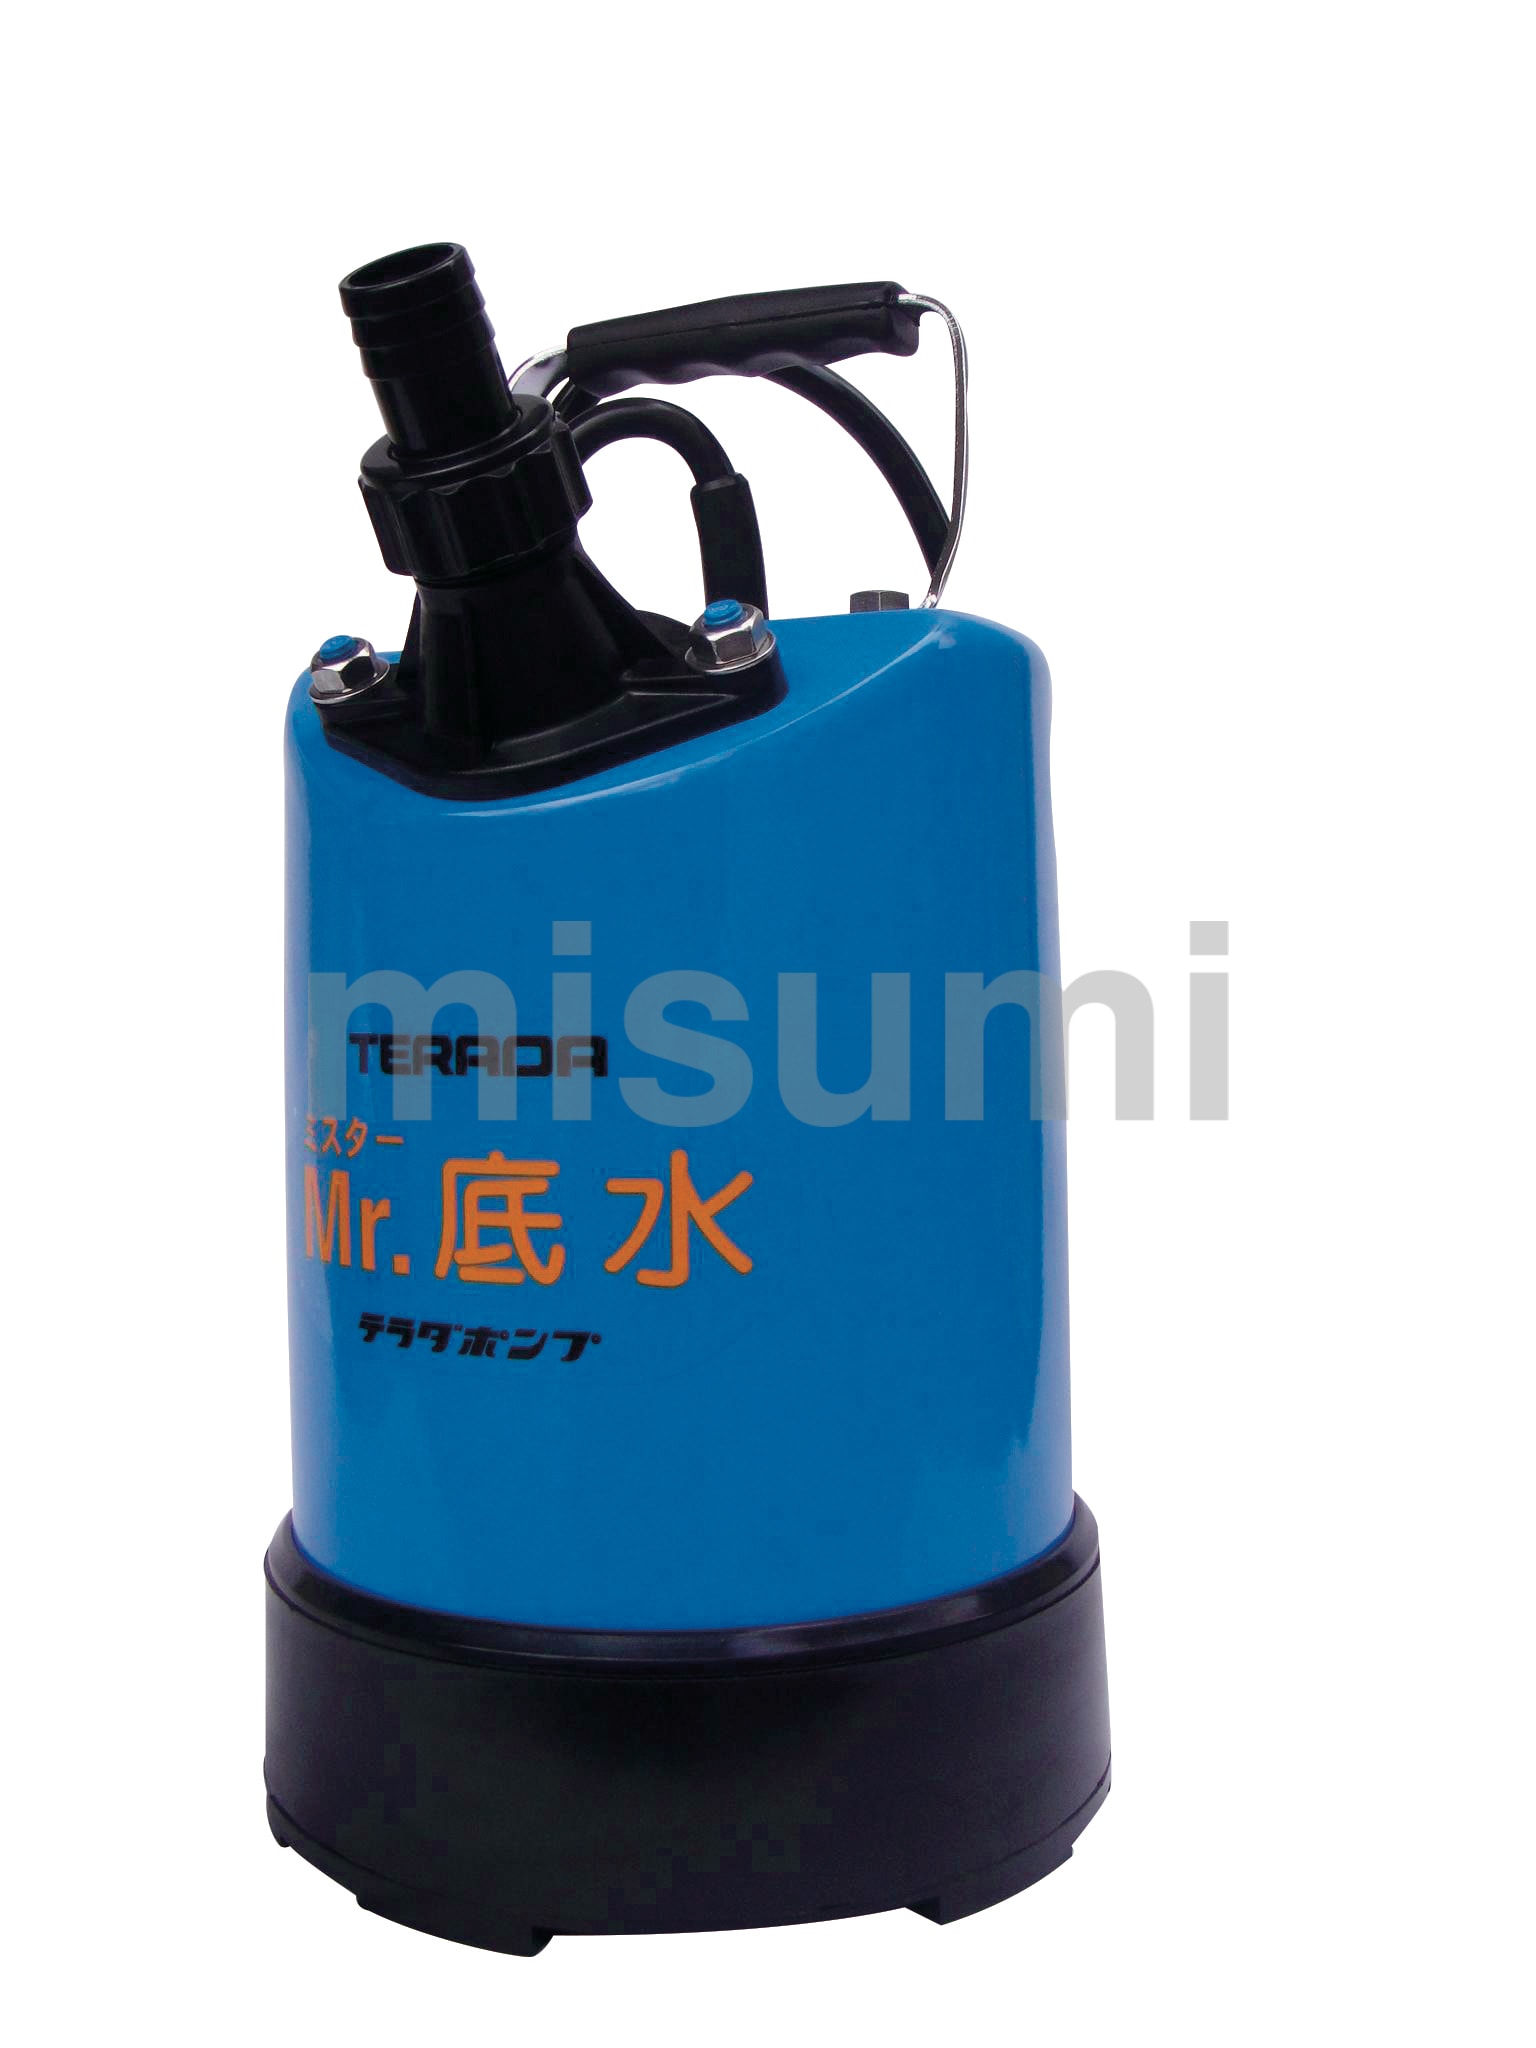 ツルミ 残水排水用水中ポンプ 32PN2.15S 50HZ - 3